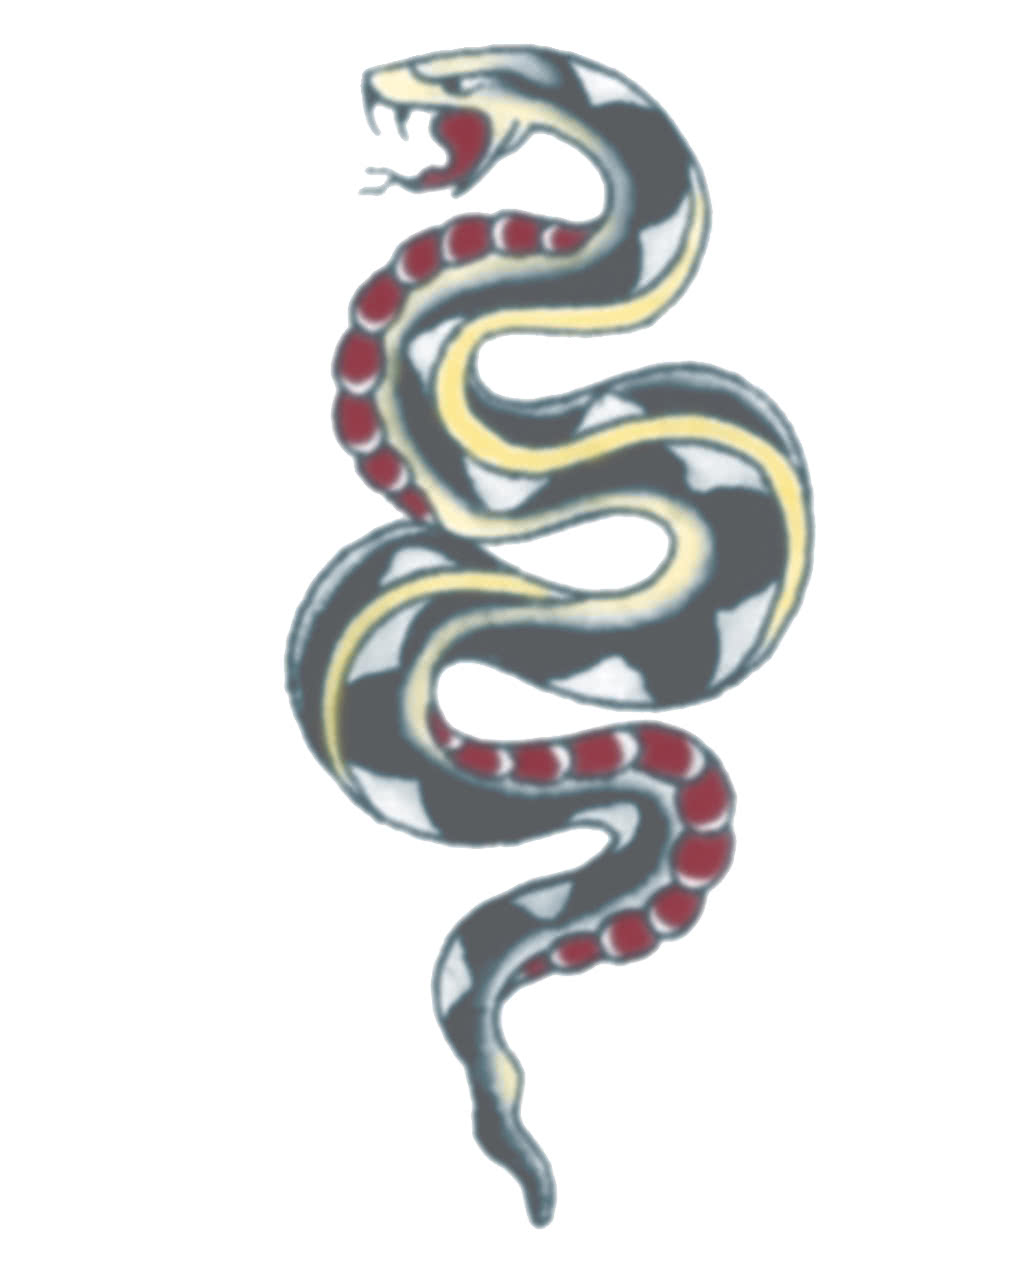 Schlangen Tattoo Klebetattoos als Kostümzubehör